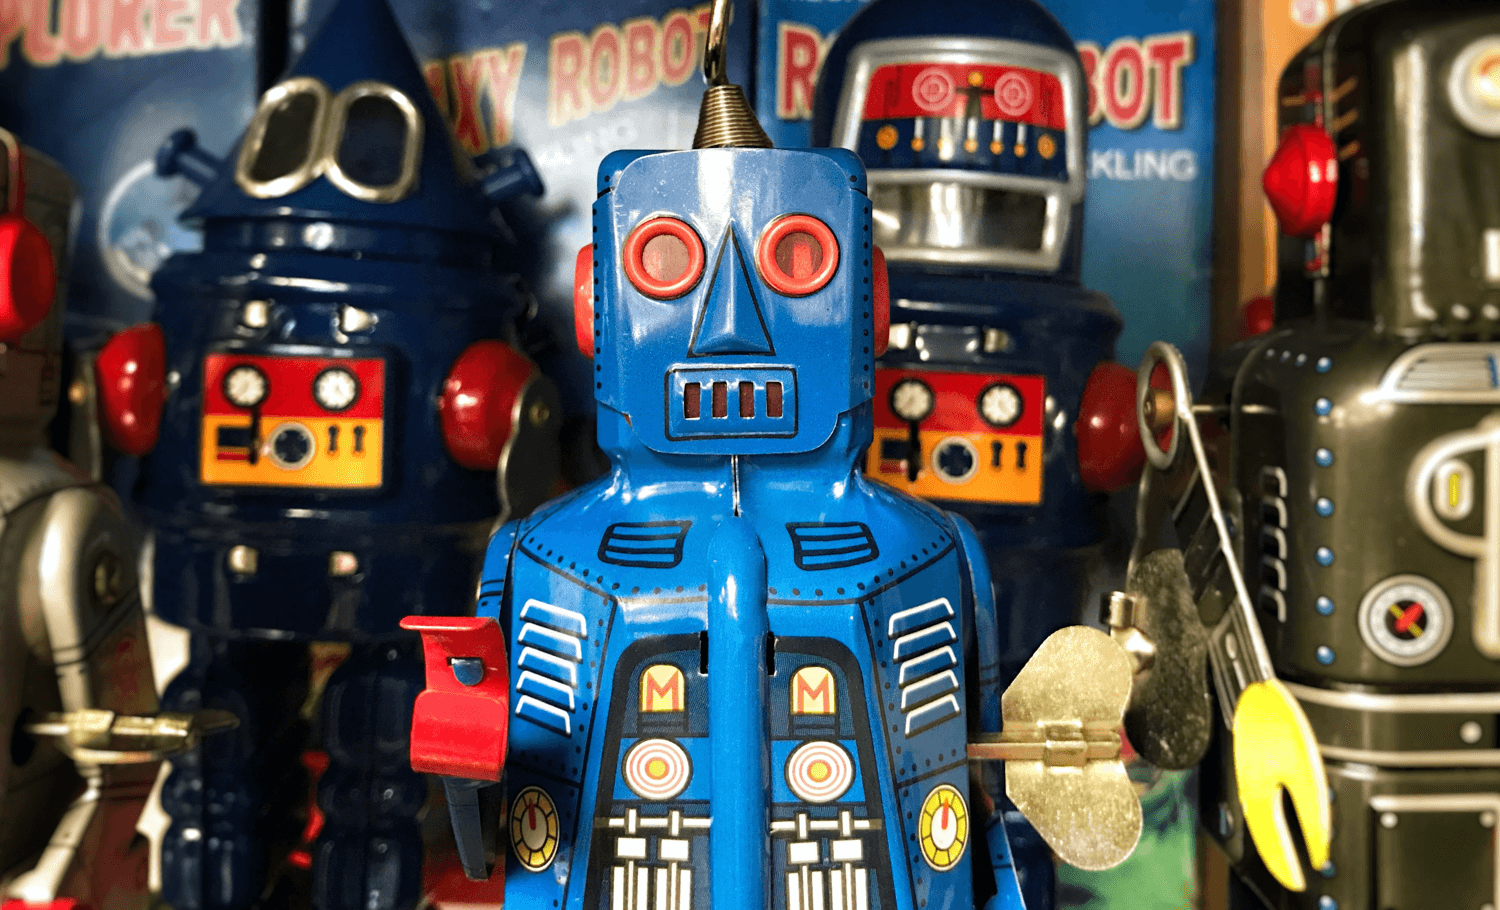 Vintage Spielzeugroboter vor Comicbüchern